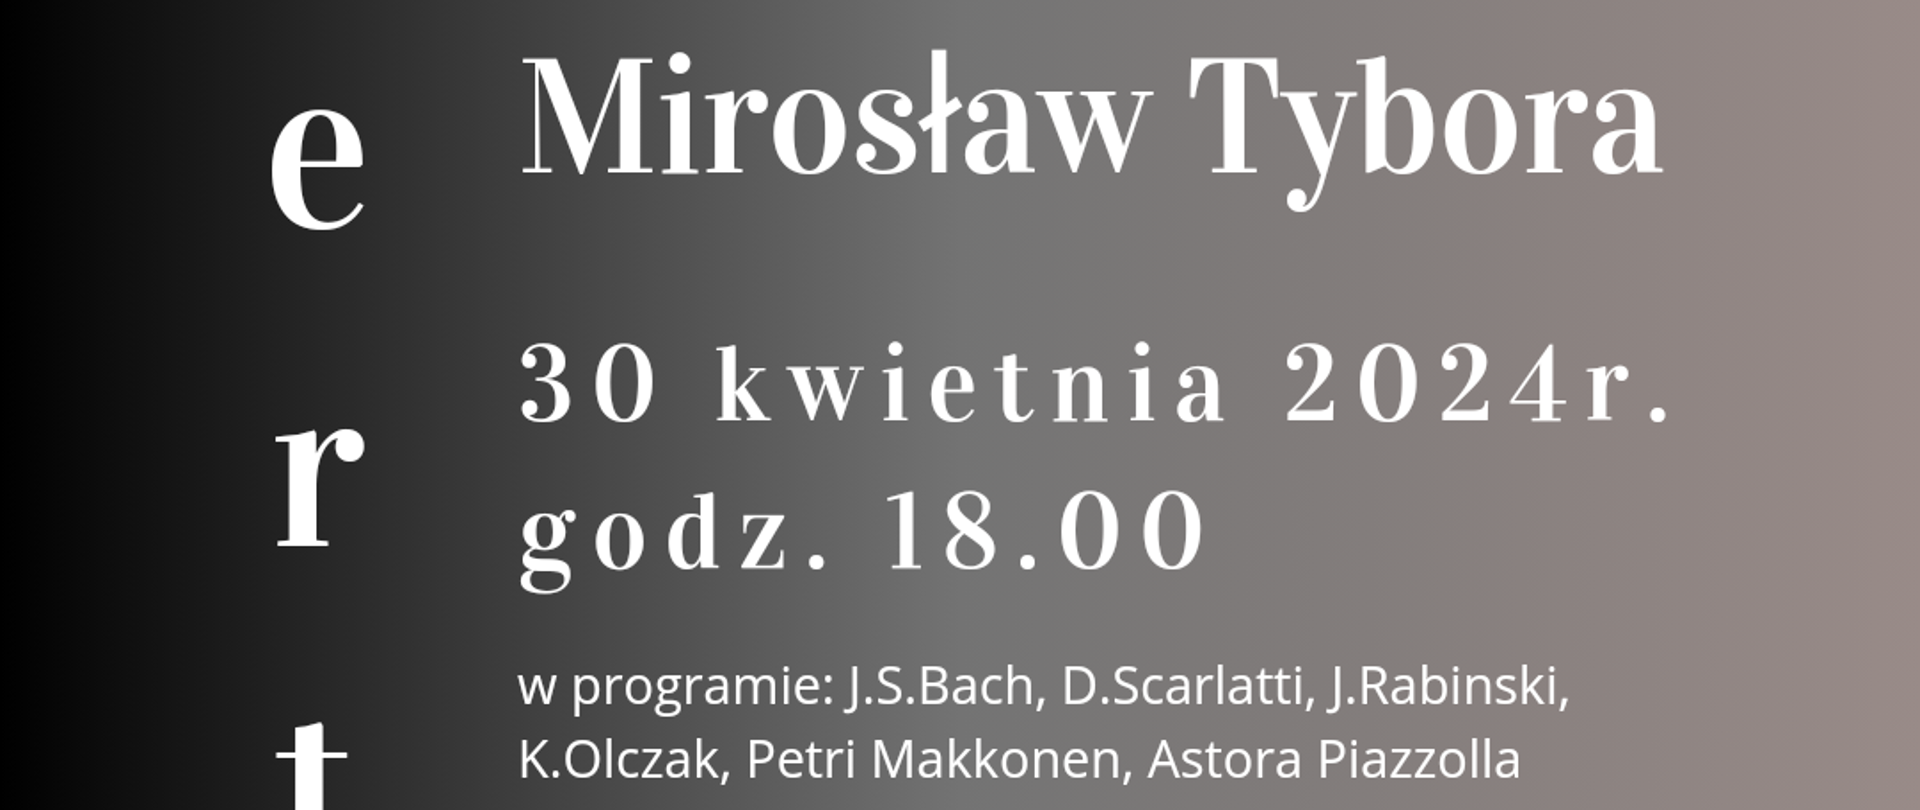 Plakat informujący o warsztatach akordeonowych oraz koncercie Mirosława Tybory w dni 30 kwietnia 2024r.
Na ciemnym tle białymi literami wyżej wymienione informacje oraz zdjęcie artysty.